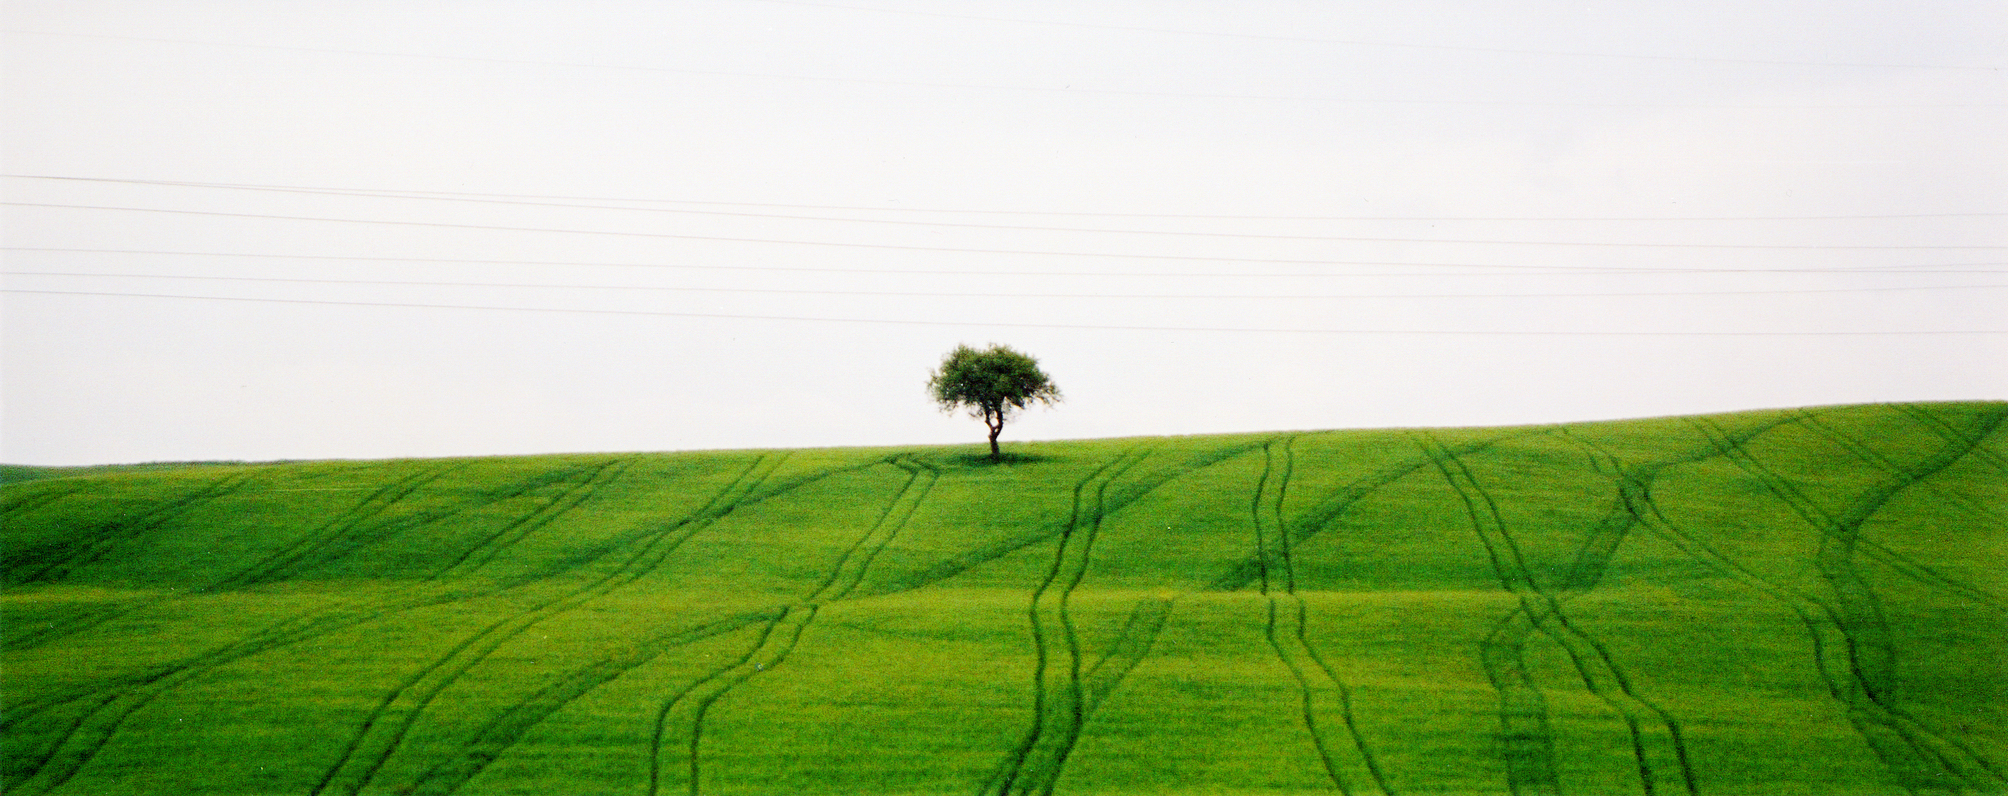 Green Landscape & Tree